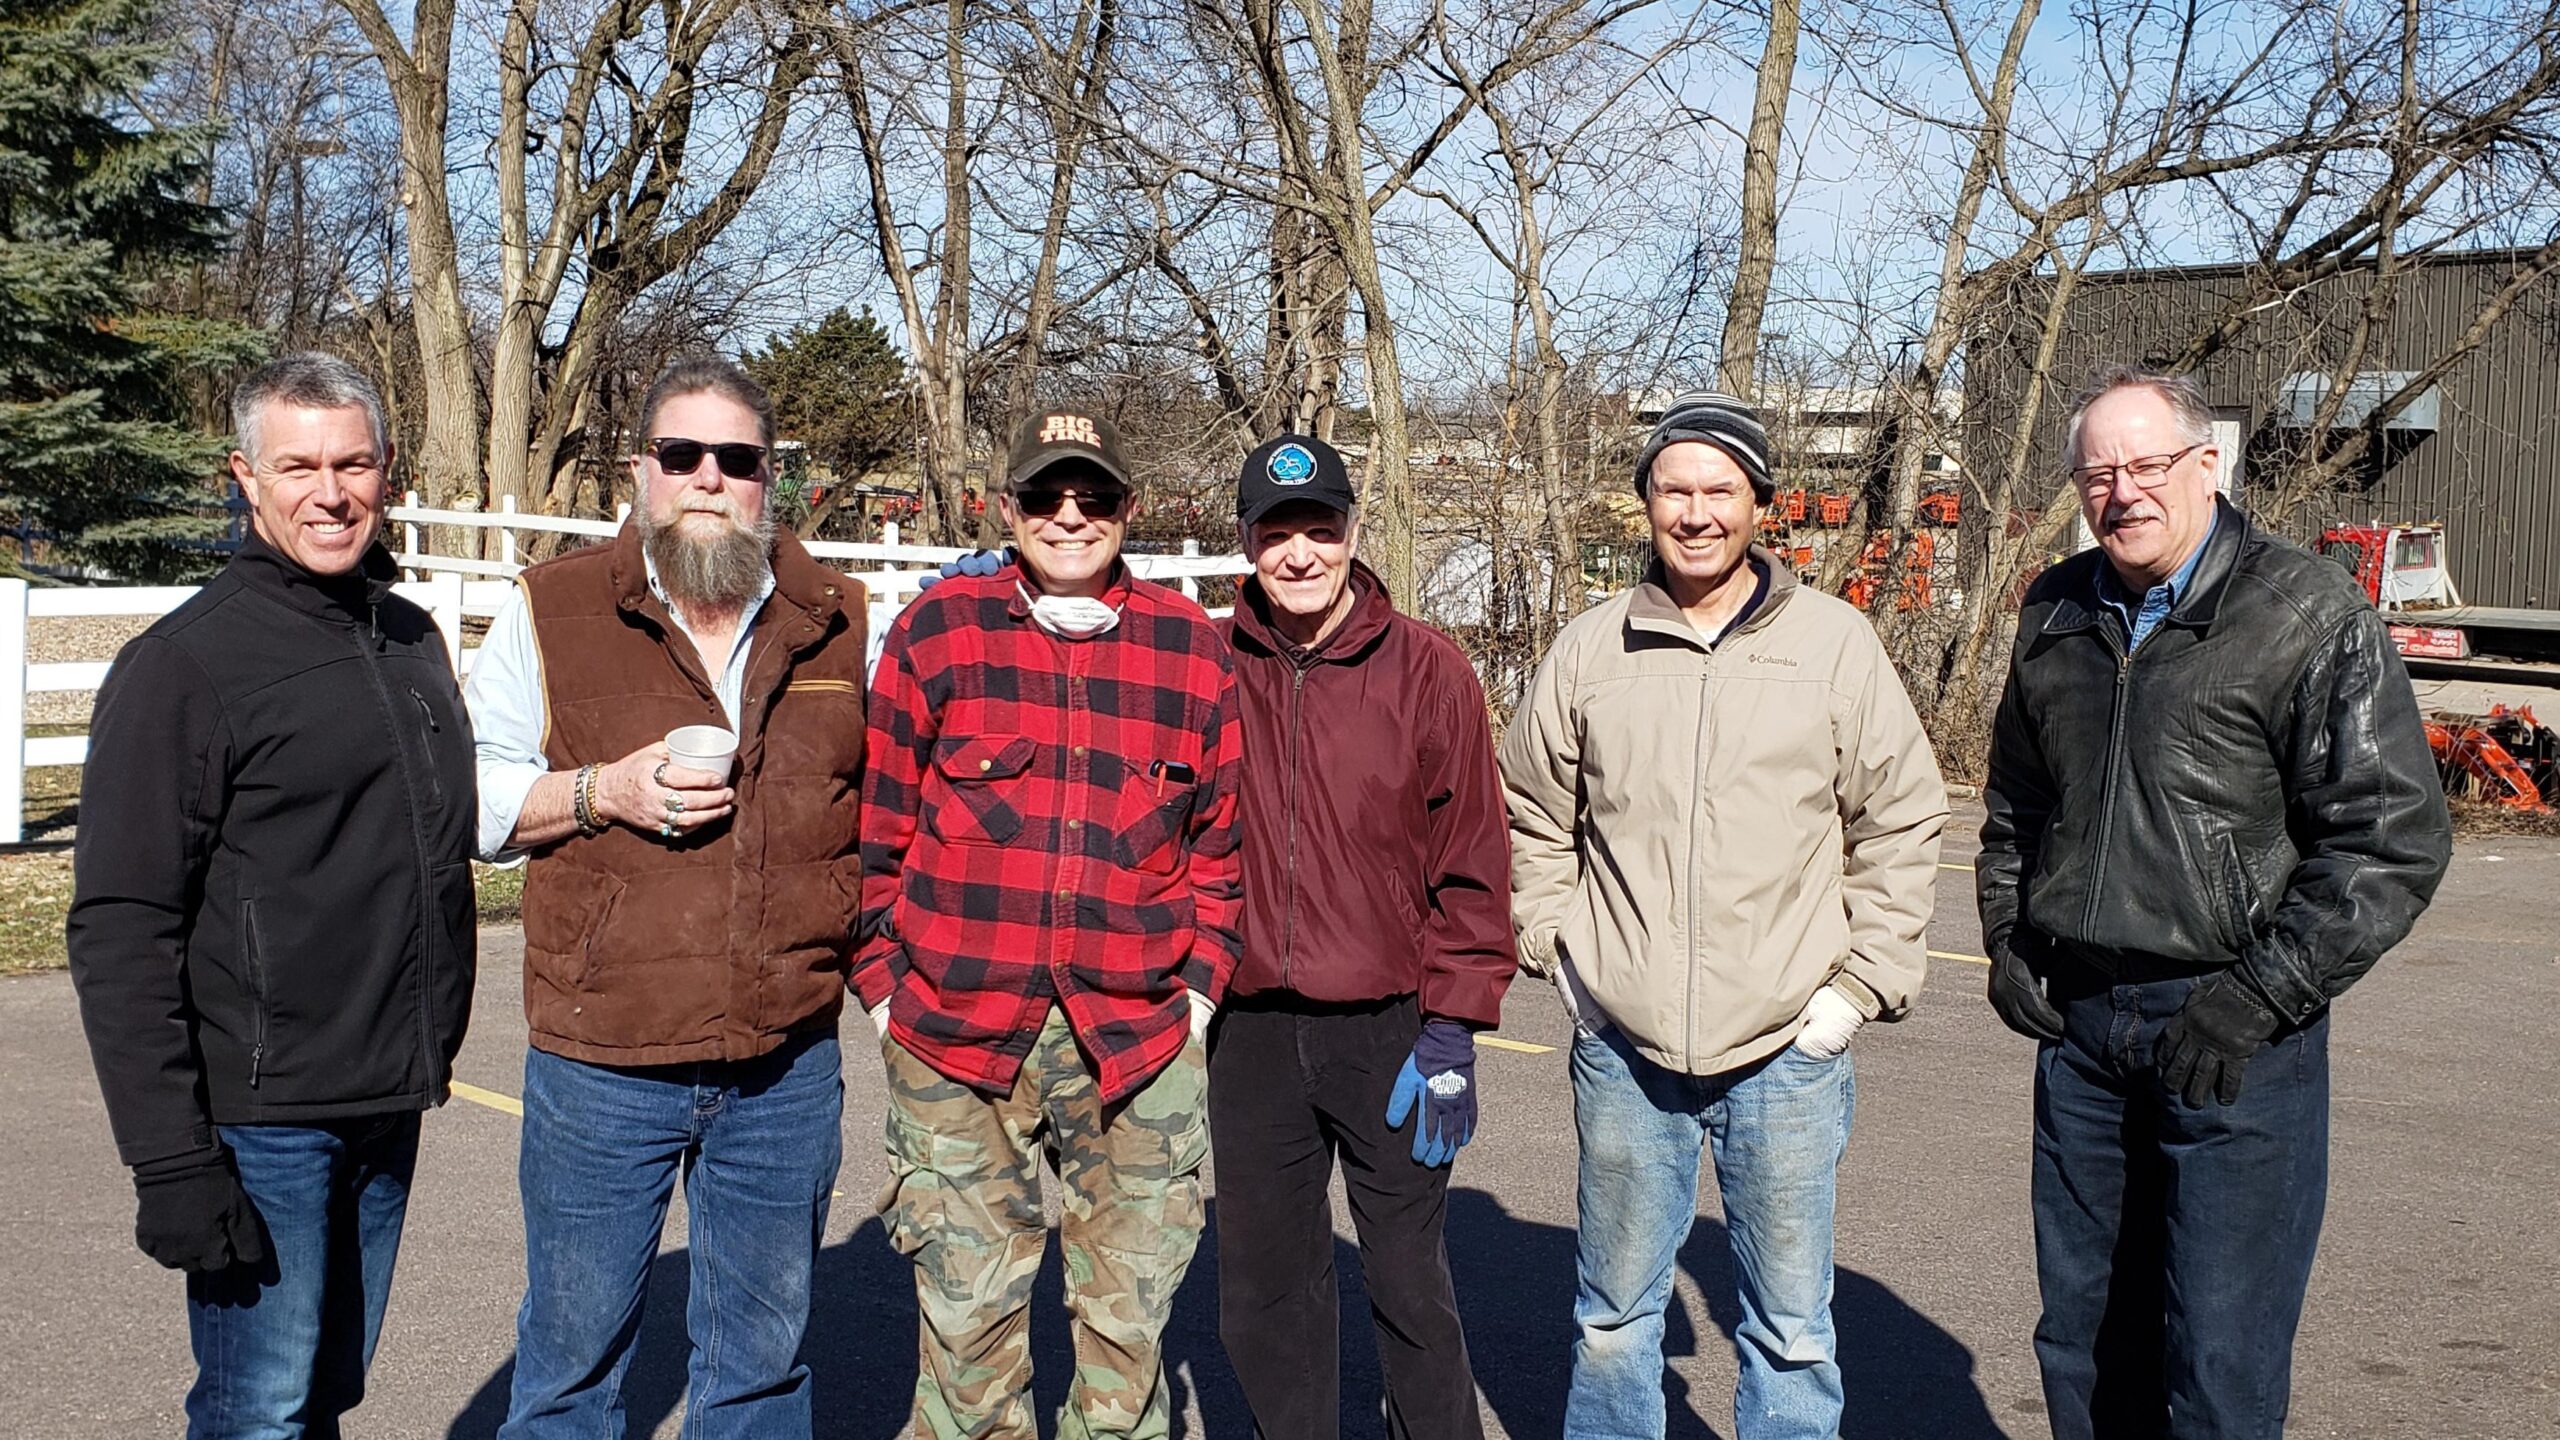 A group of men volunteering at the Sauk Prairie Food Pantry